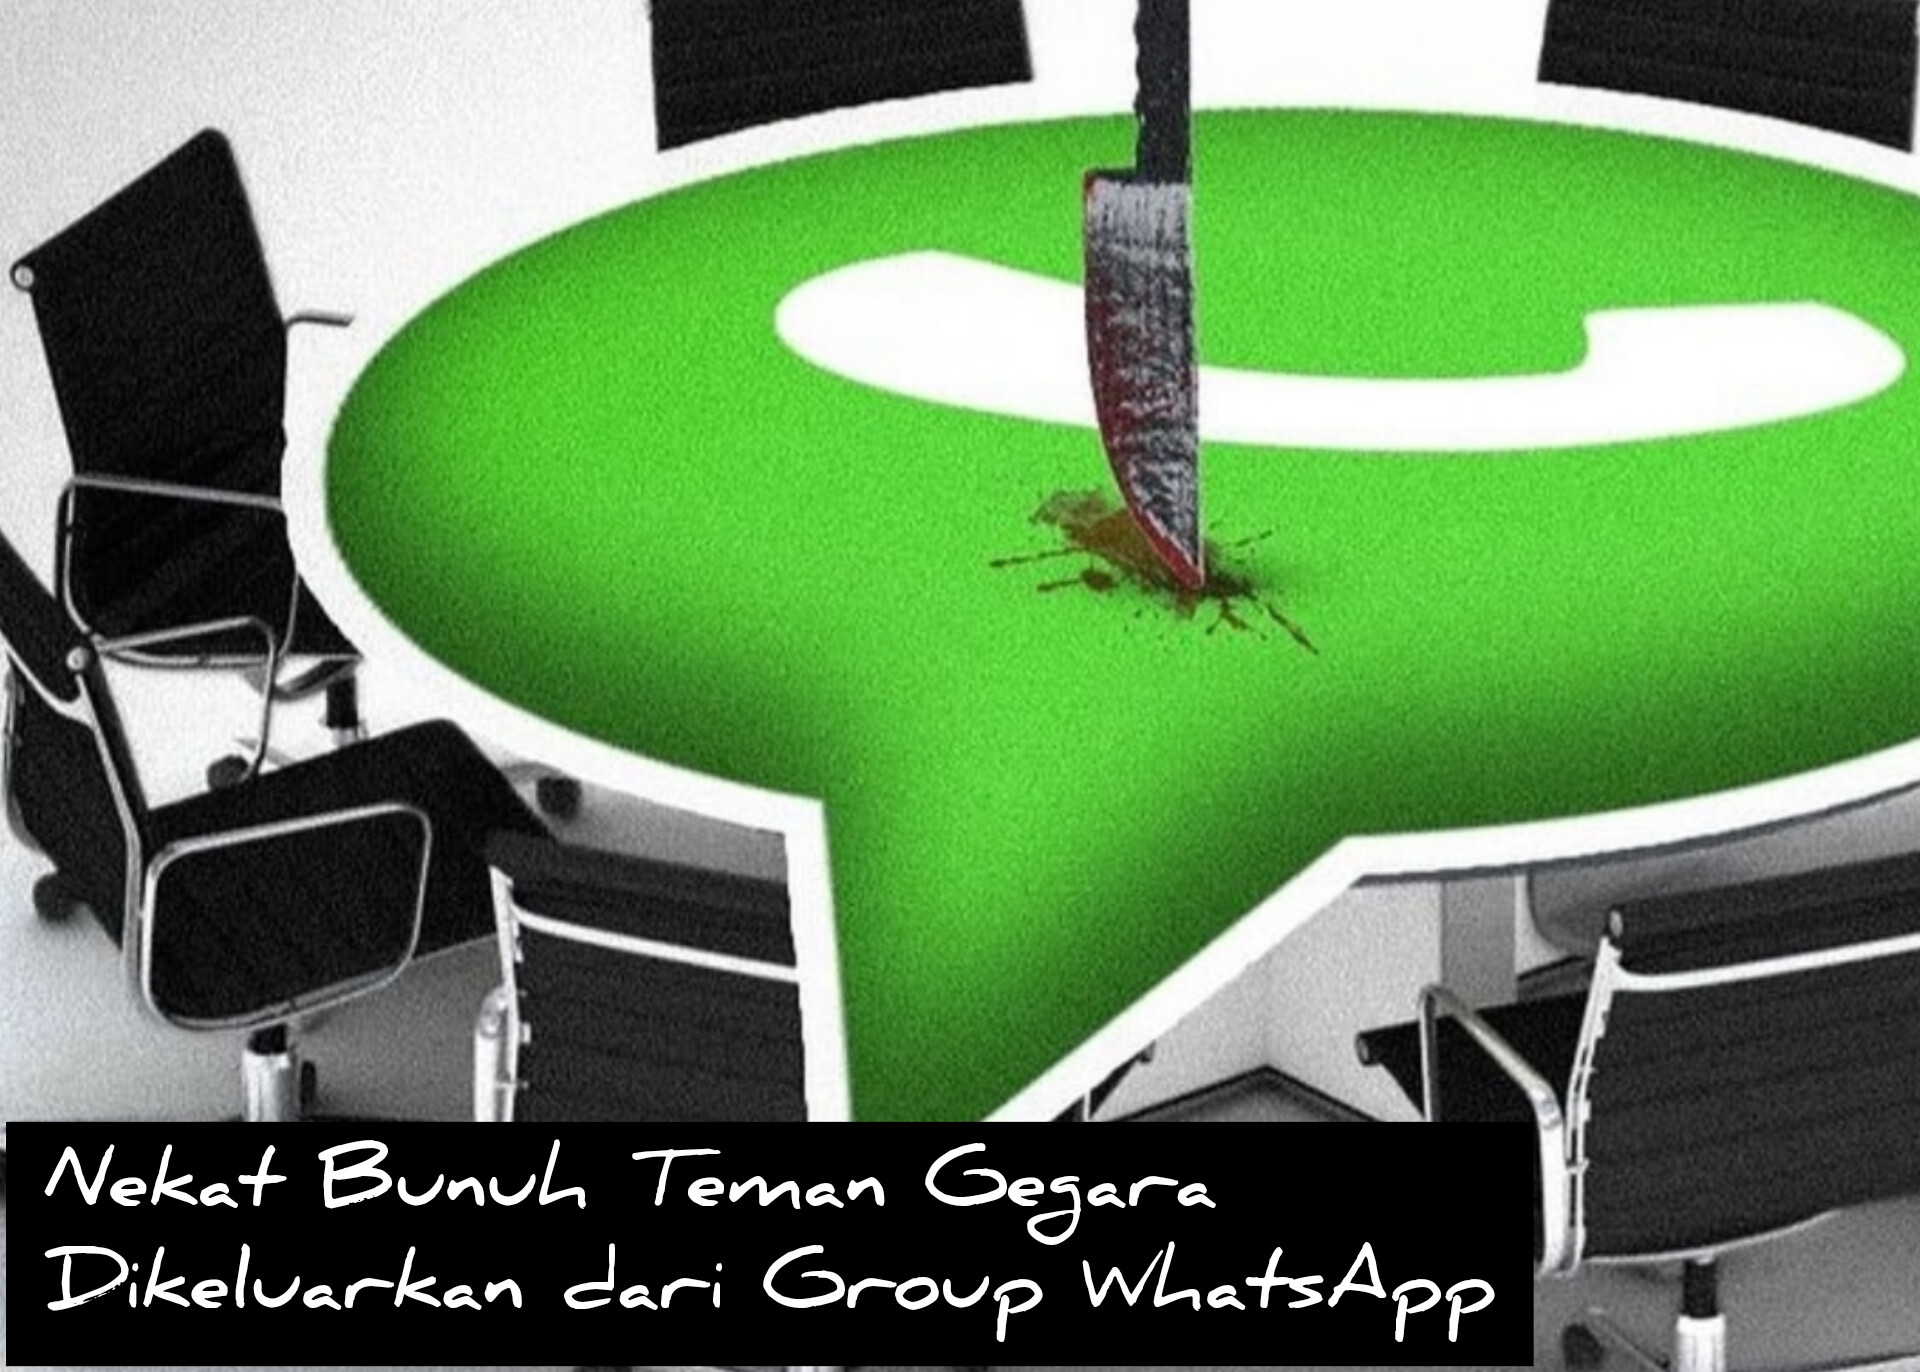 Gegara Usai Keluar dari Group WhatsApp, Teman Bunuh Admin